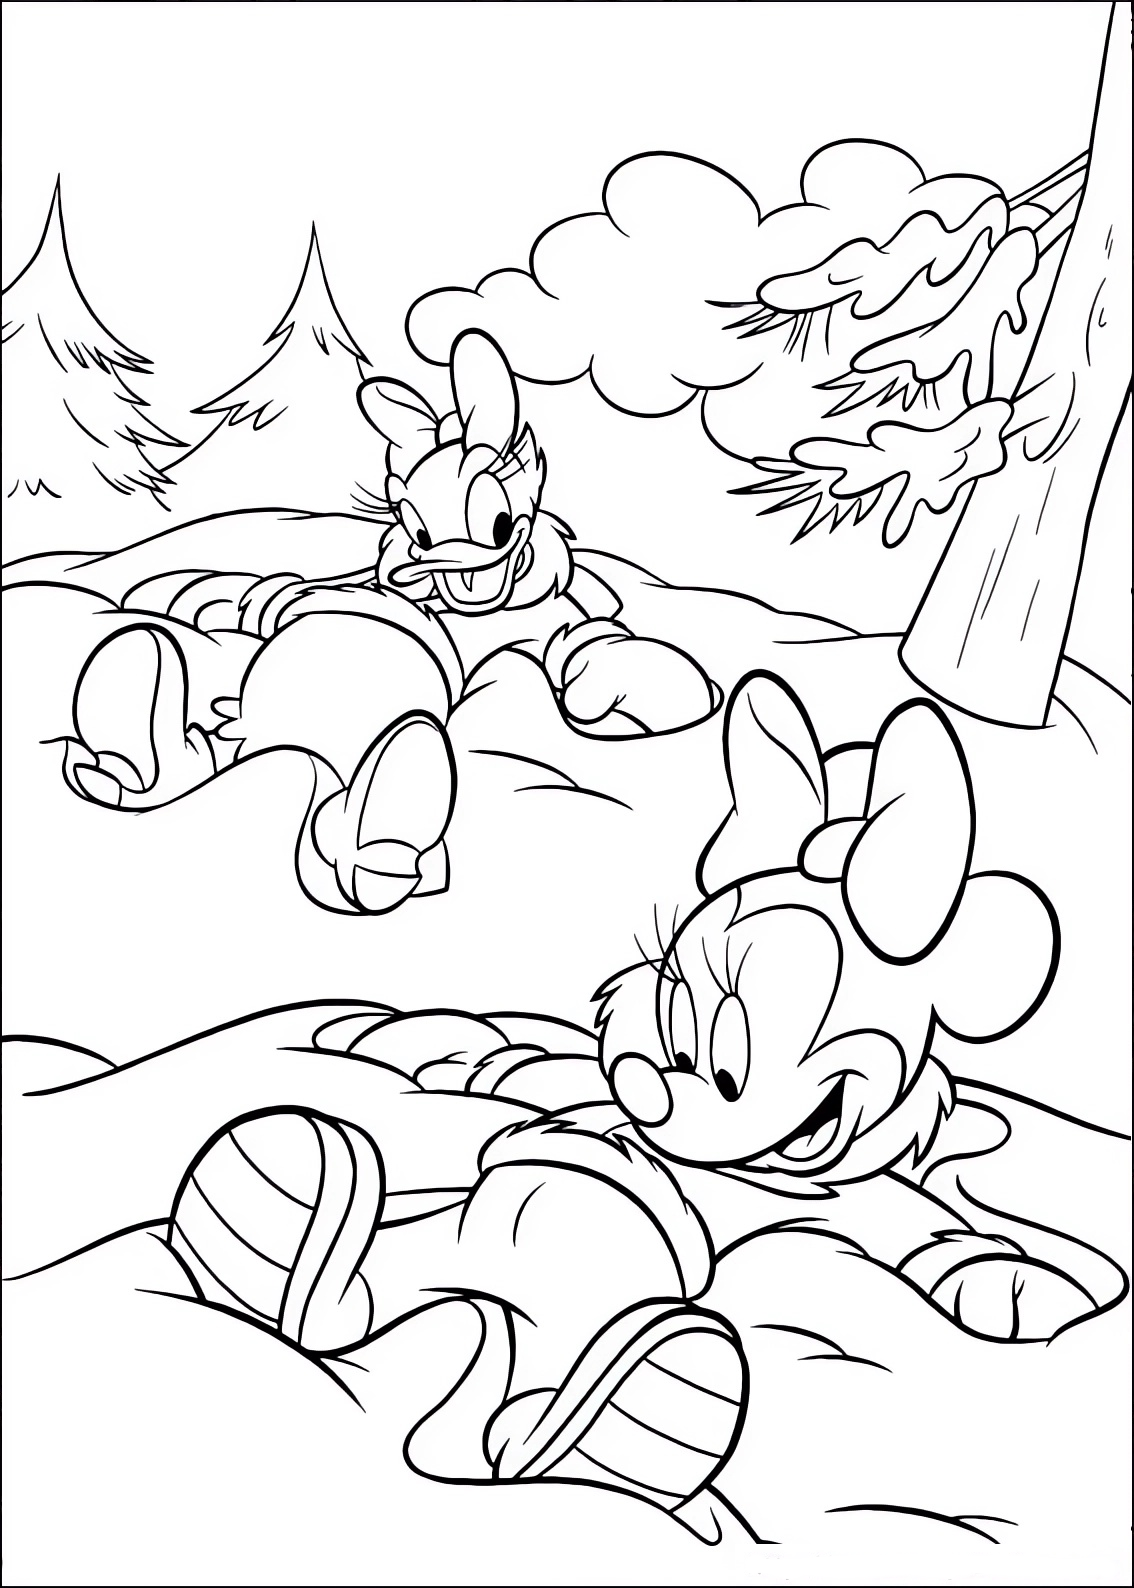 Malvorlage von Minnie Mouse und Daisy Duck im Schnee